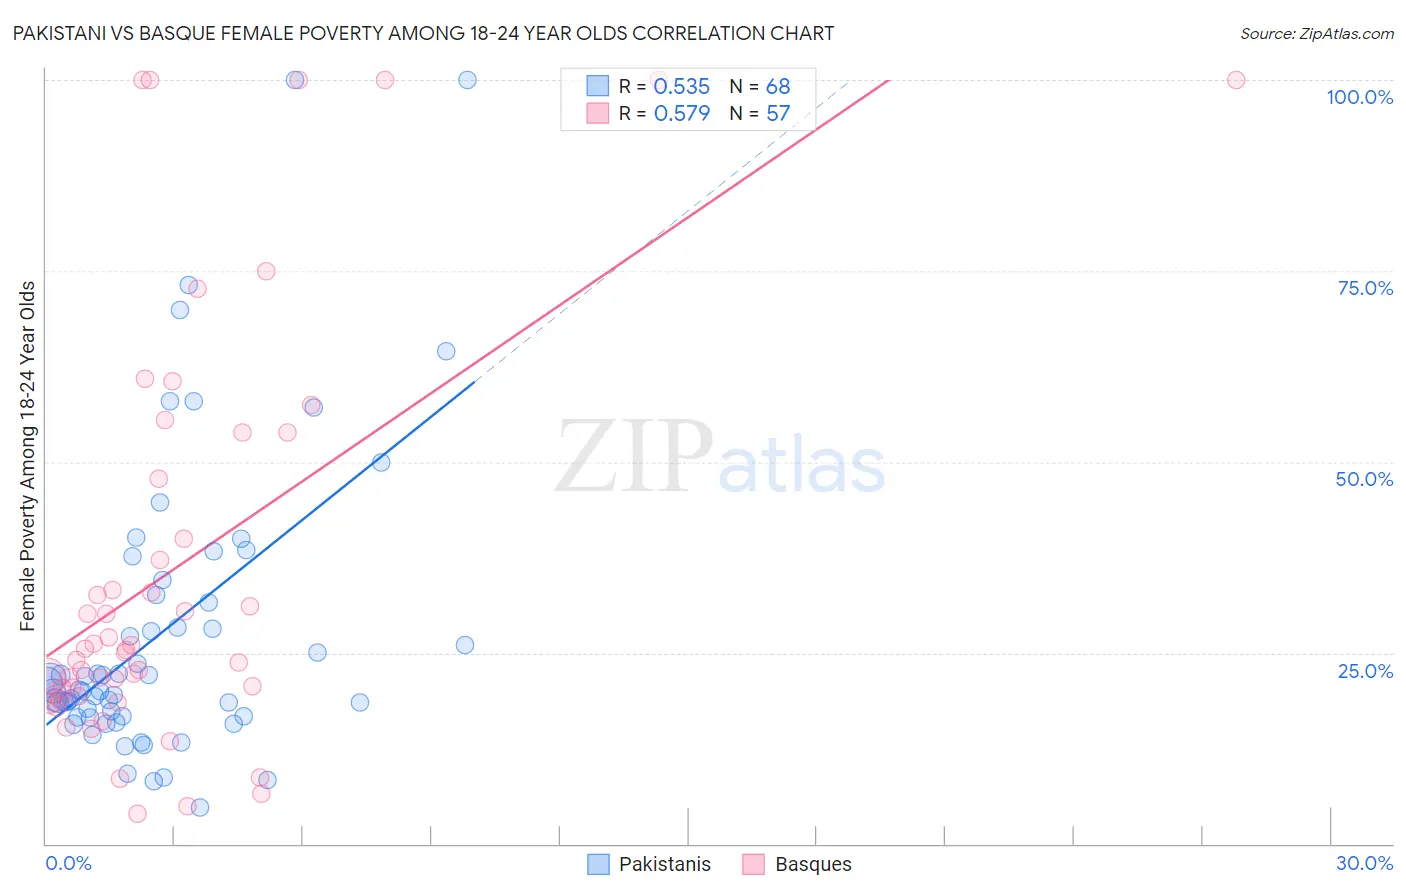 Pakistani vs Basque Female Poverty Among 18-24 Year Olds